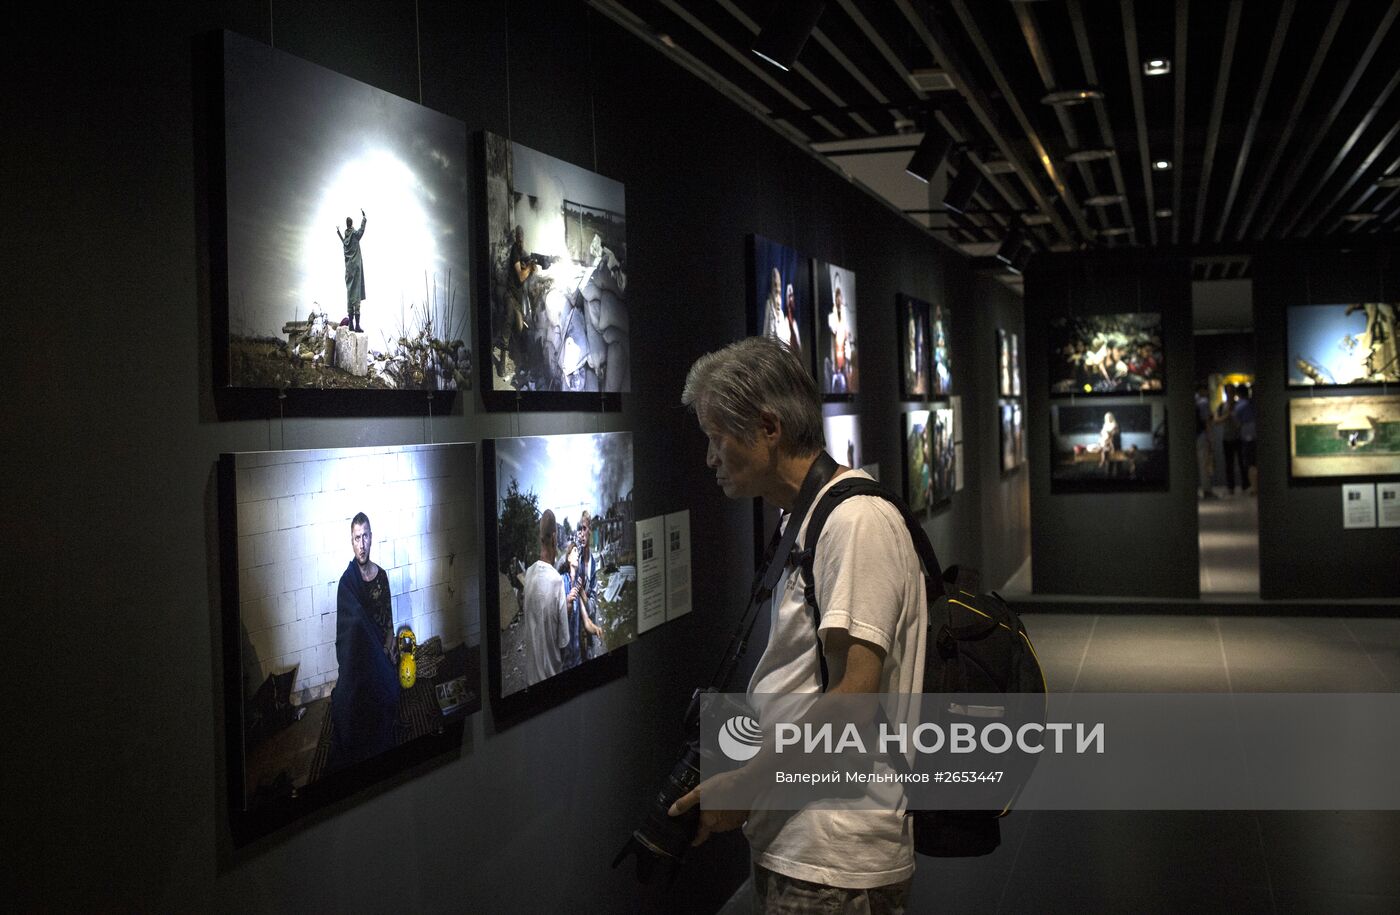 Фотографы МИА "Россия сегодня" стали триумфаторами CHIPP